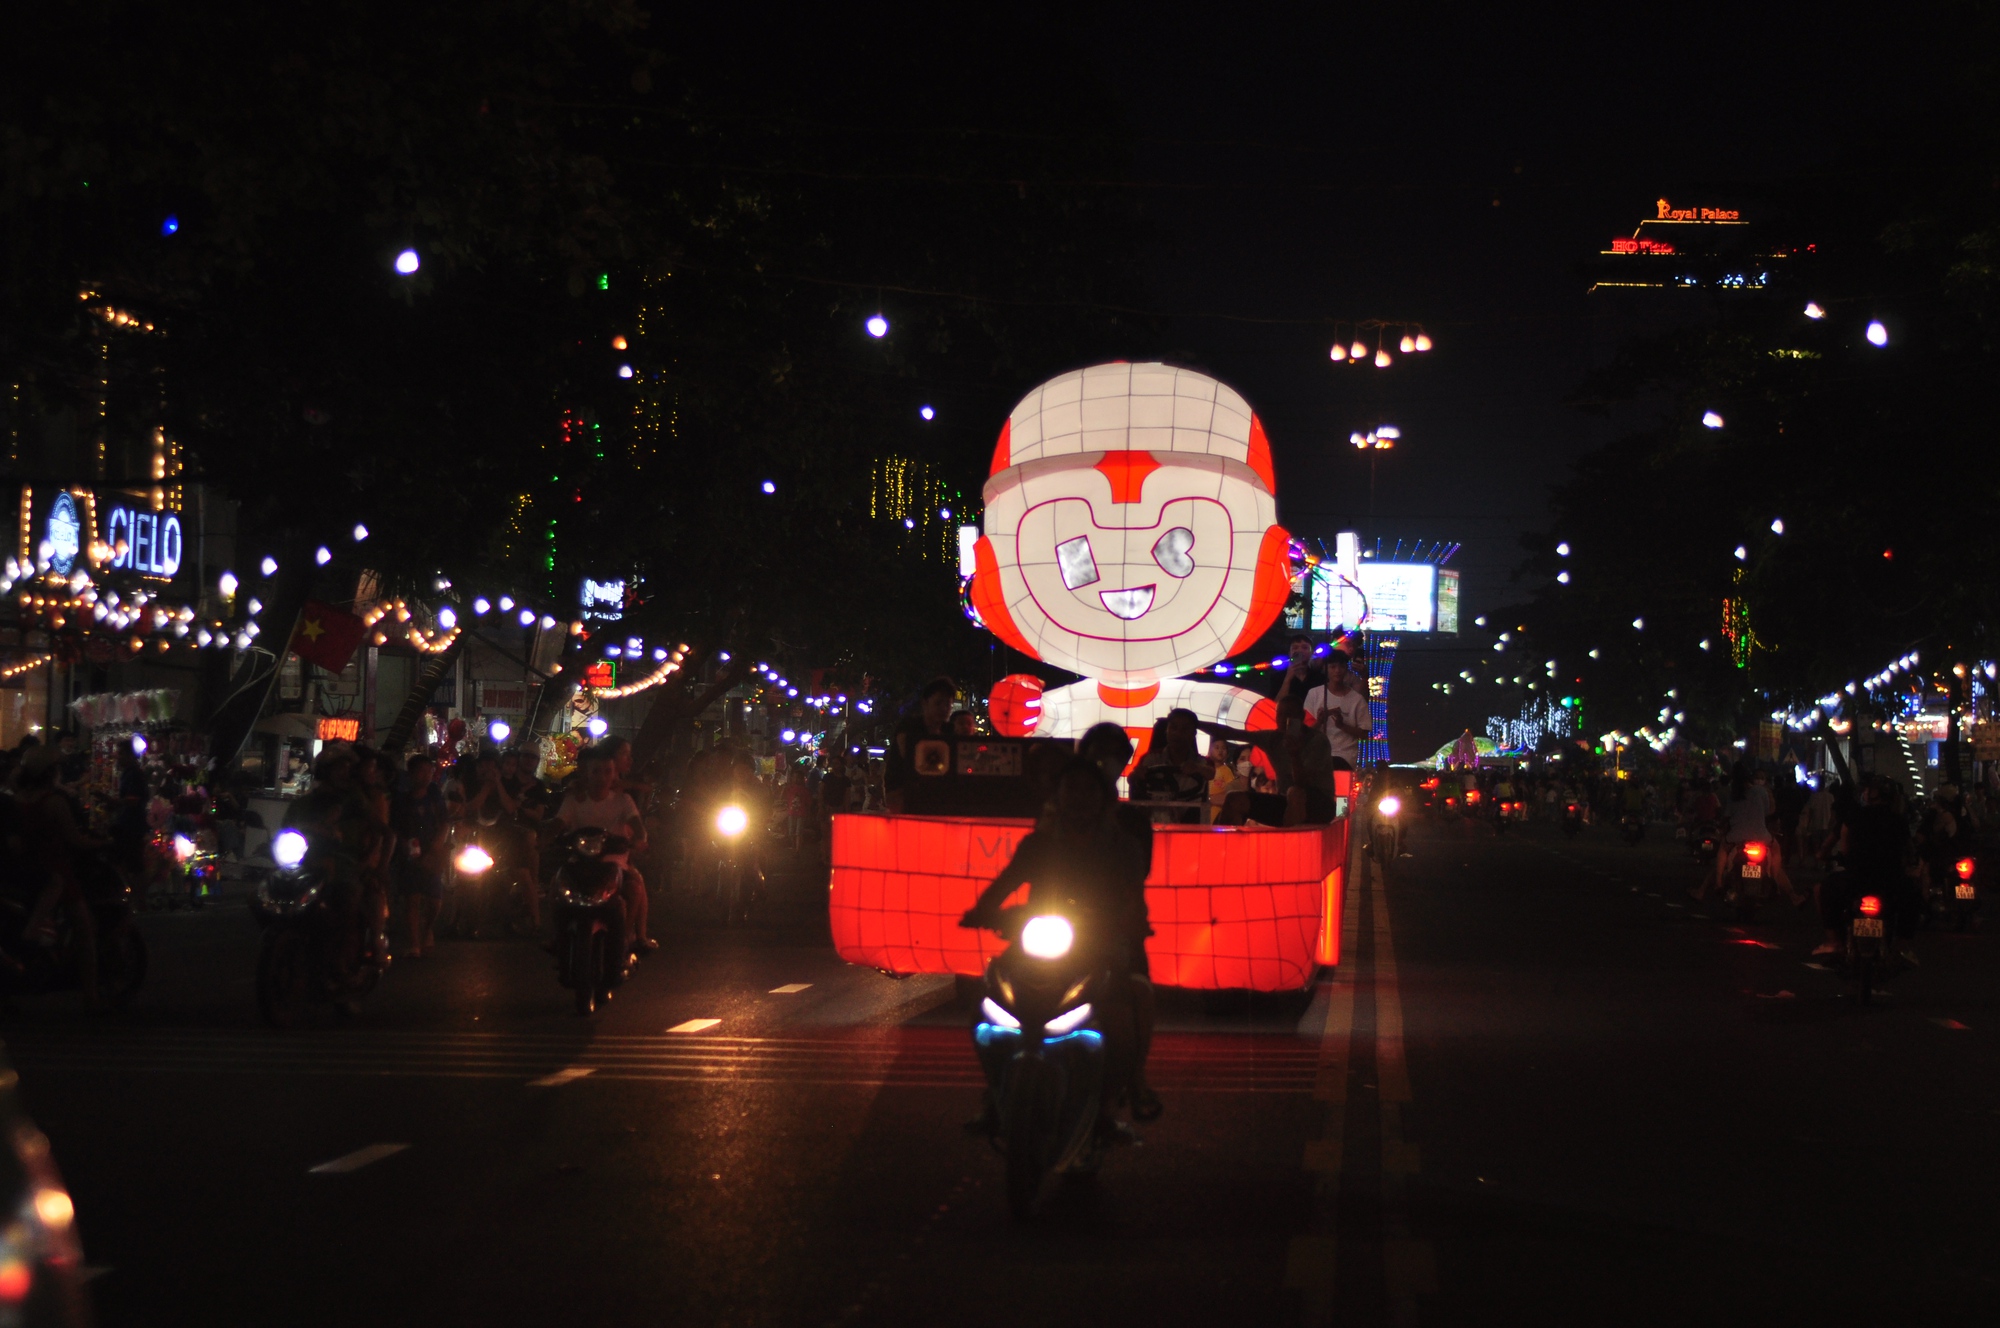 Tuyên Quang bừng sáng sôi động về đêm trước ngày lễ hội Trung thu - Ảnh 5.